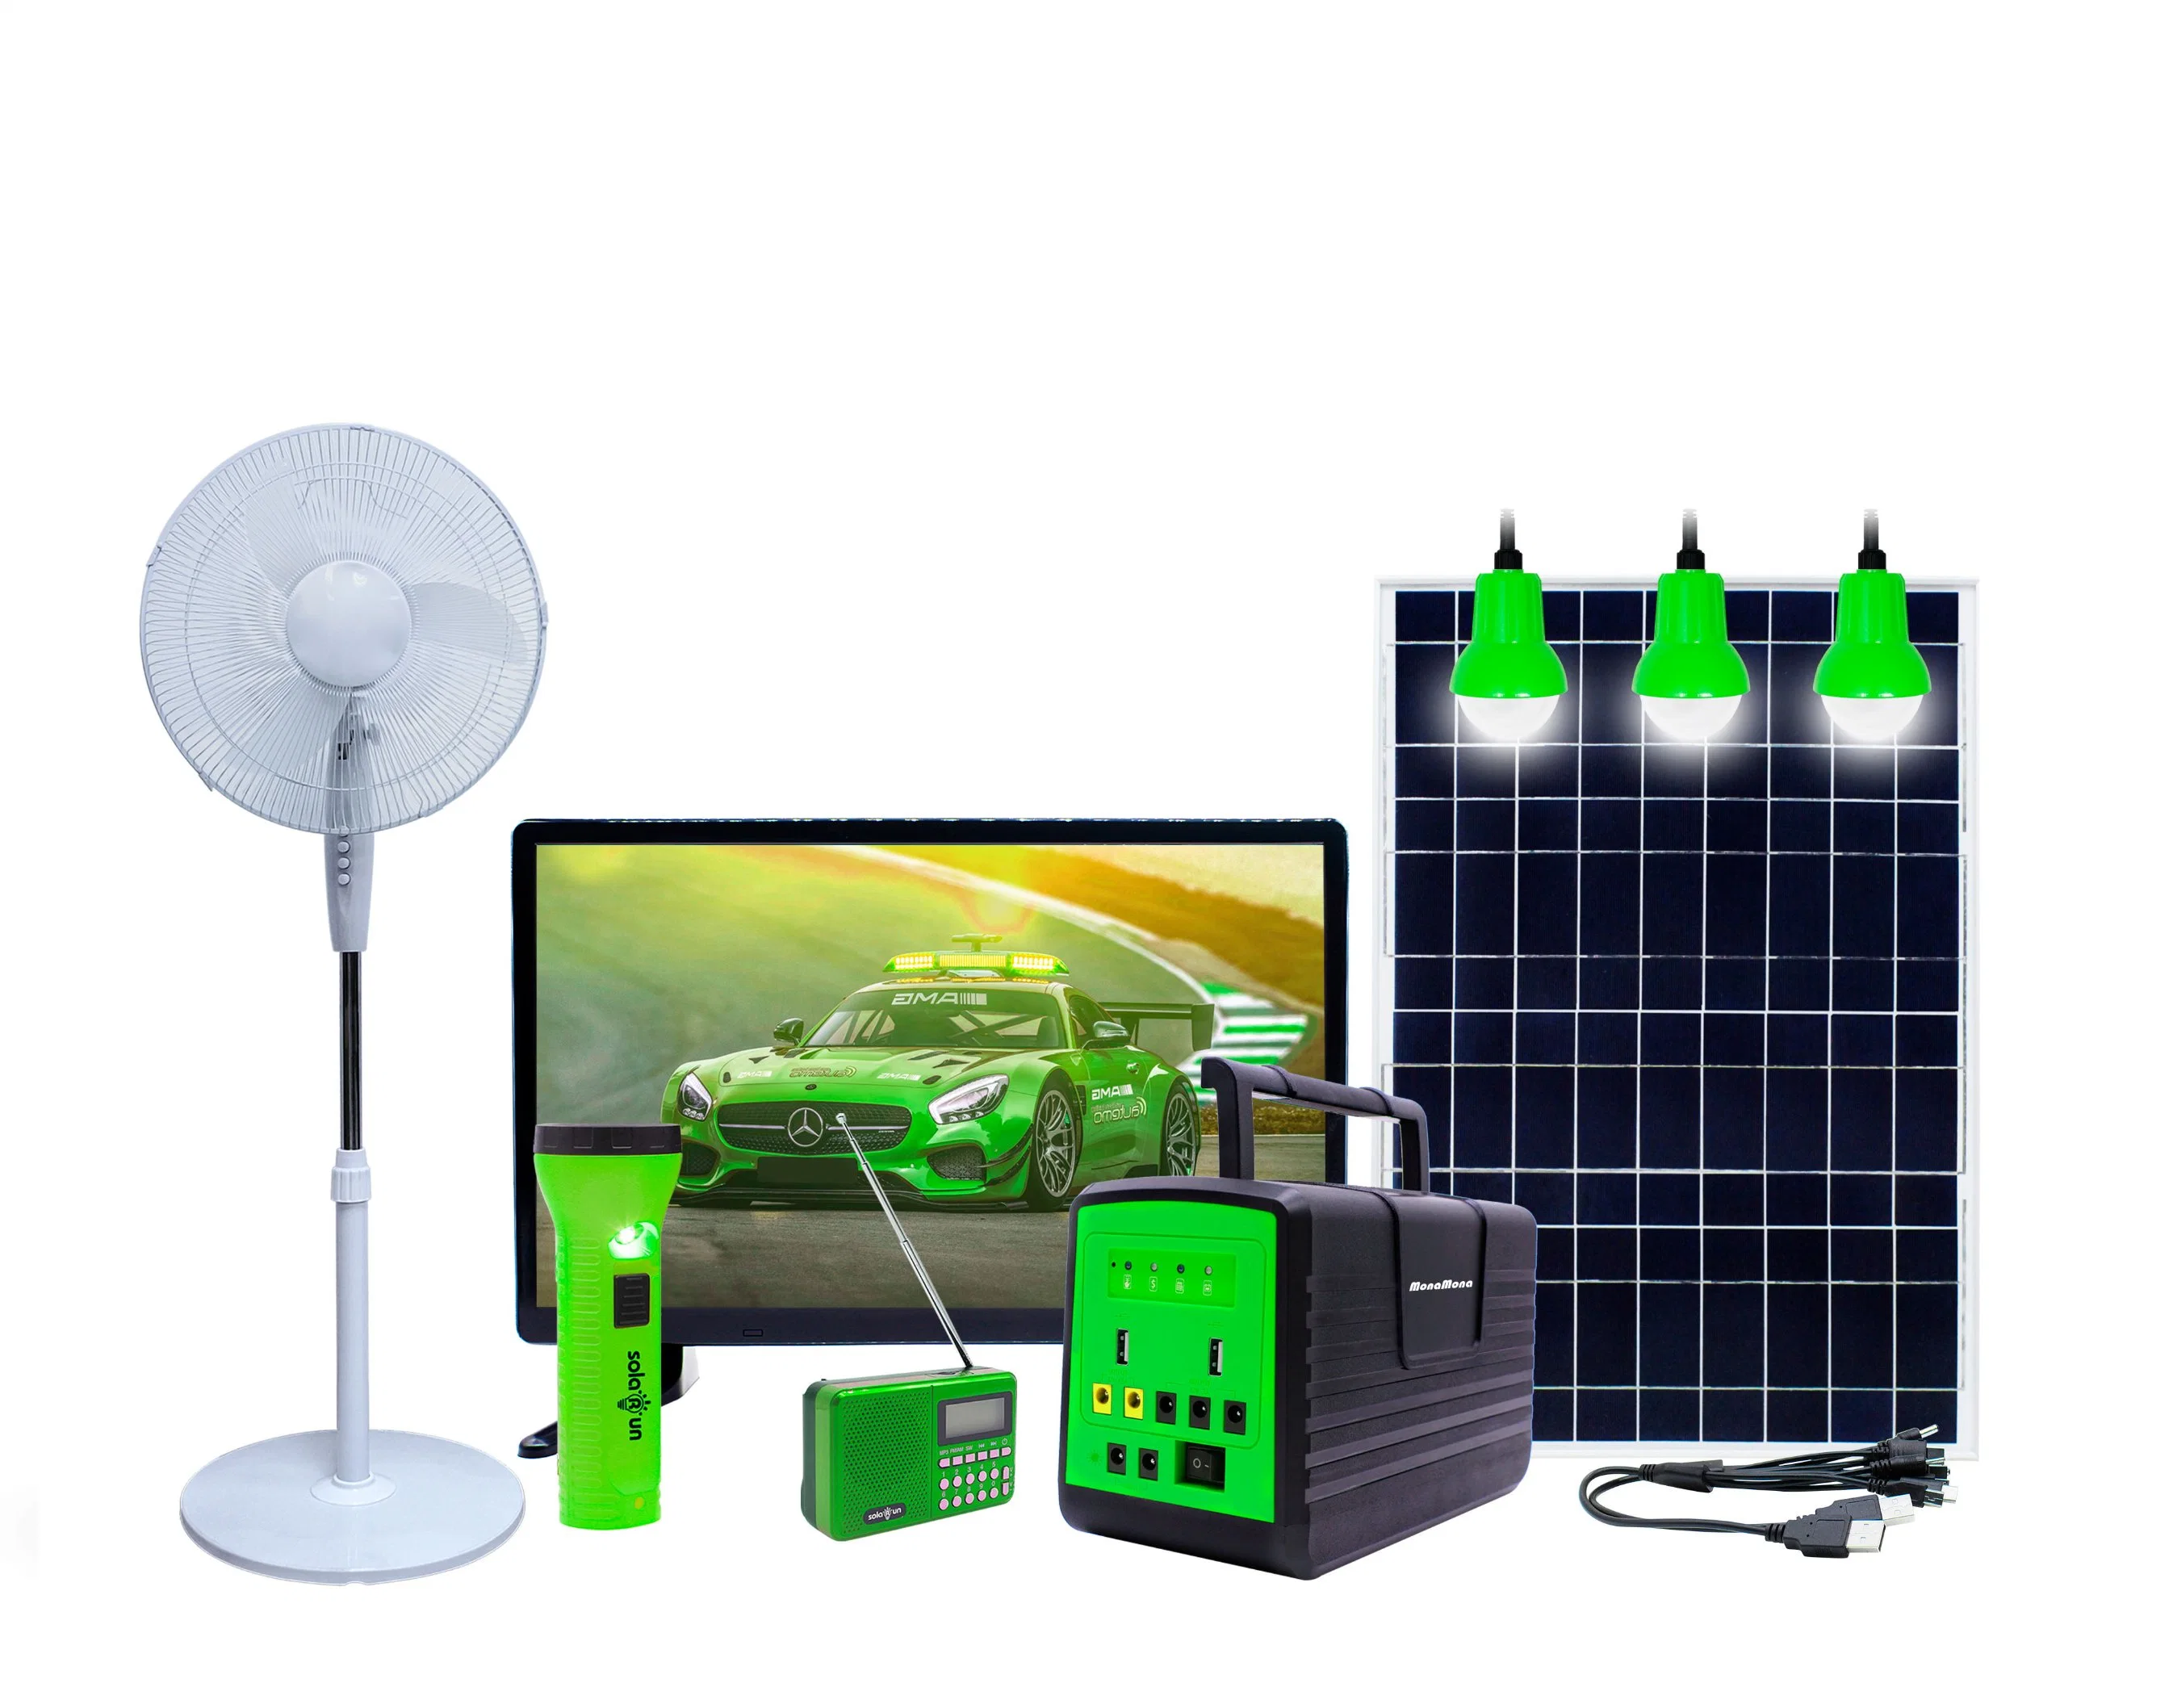 Système d'éclairage solaire portable hors réseau à paiement à l'utilisation pour alimenter une télévision, un ventilateur en courant continu